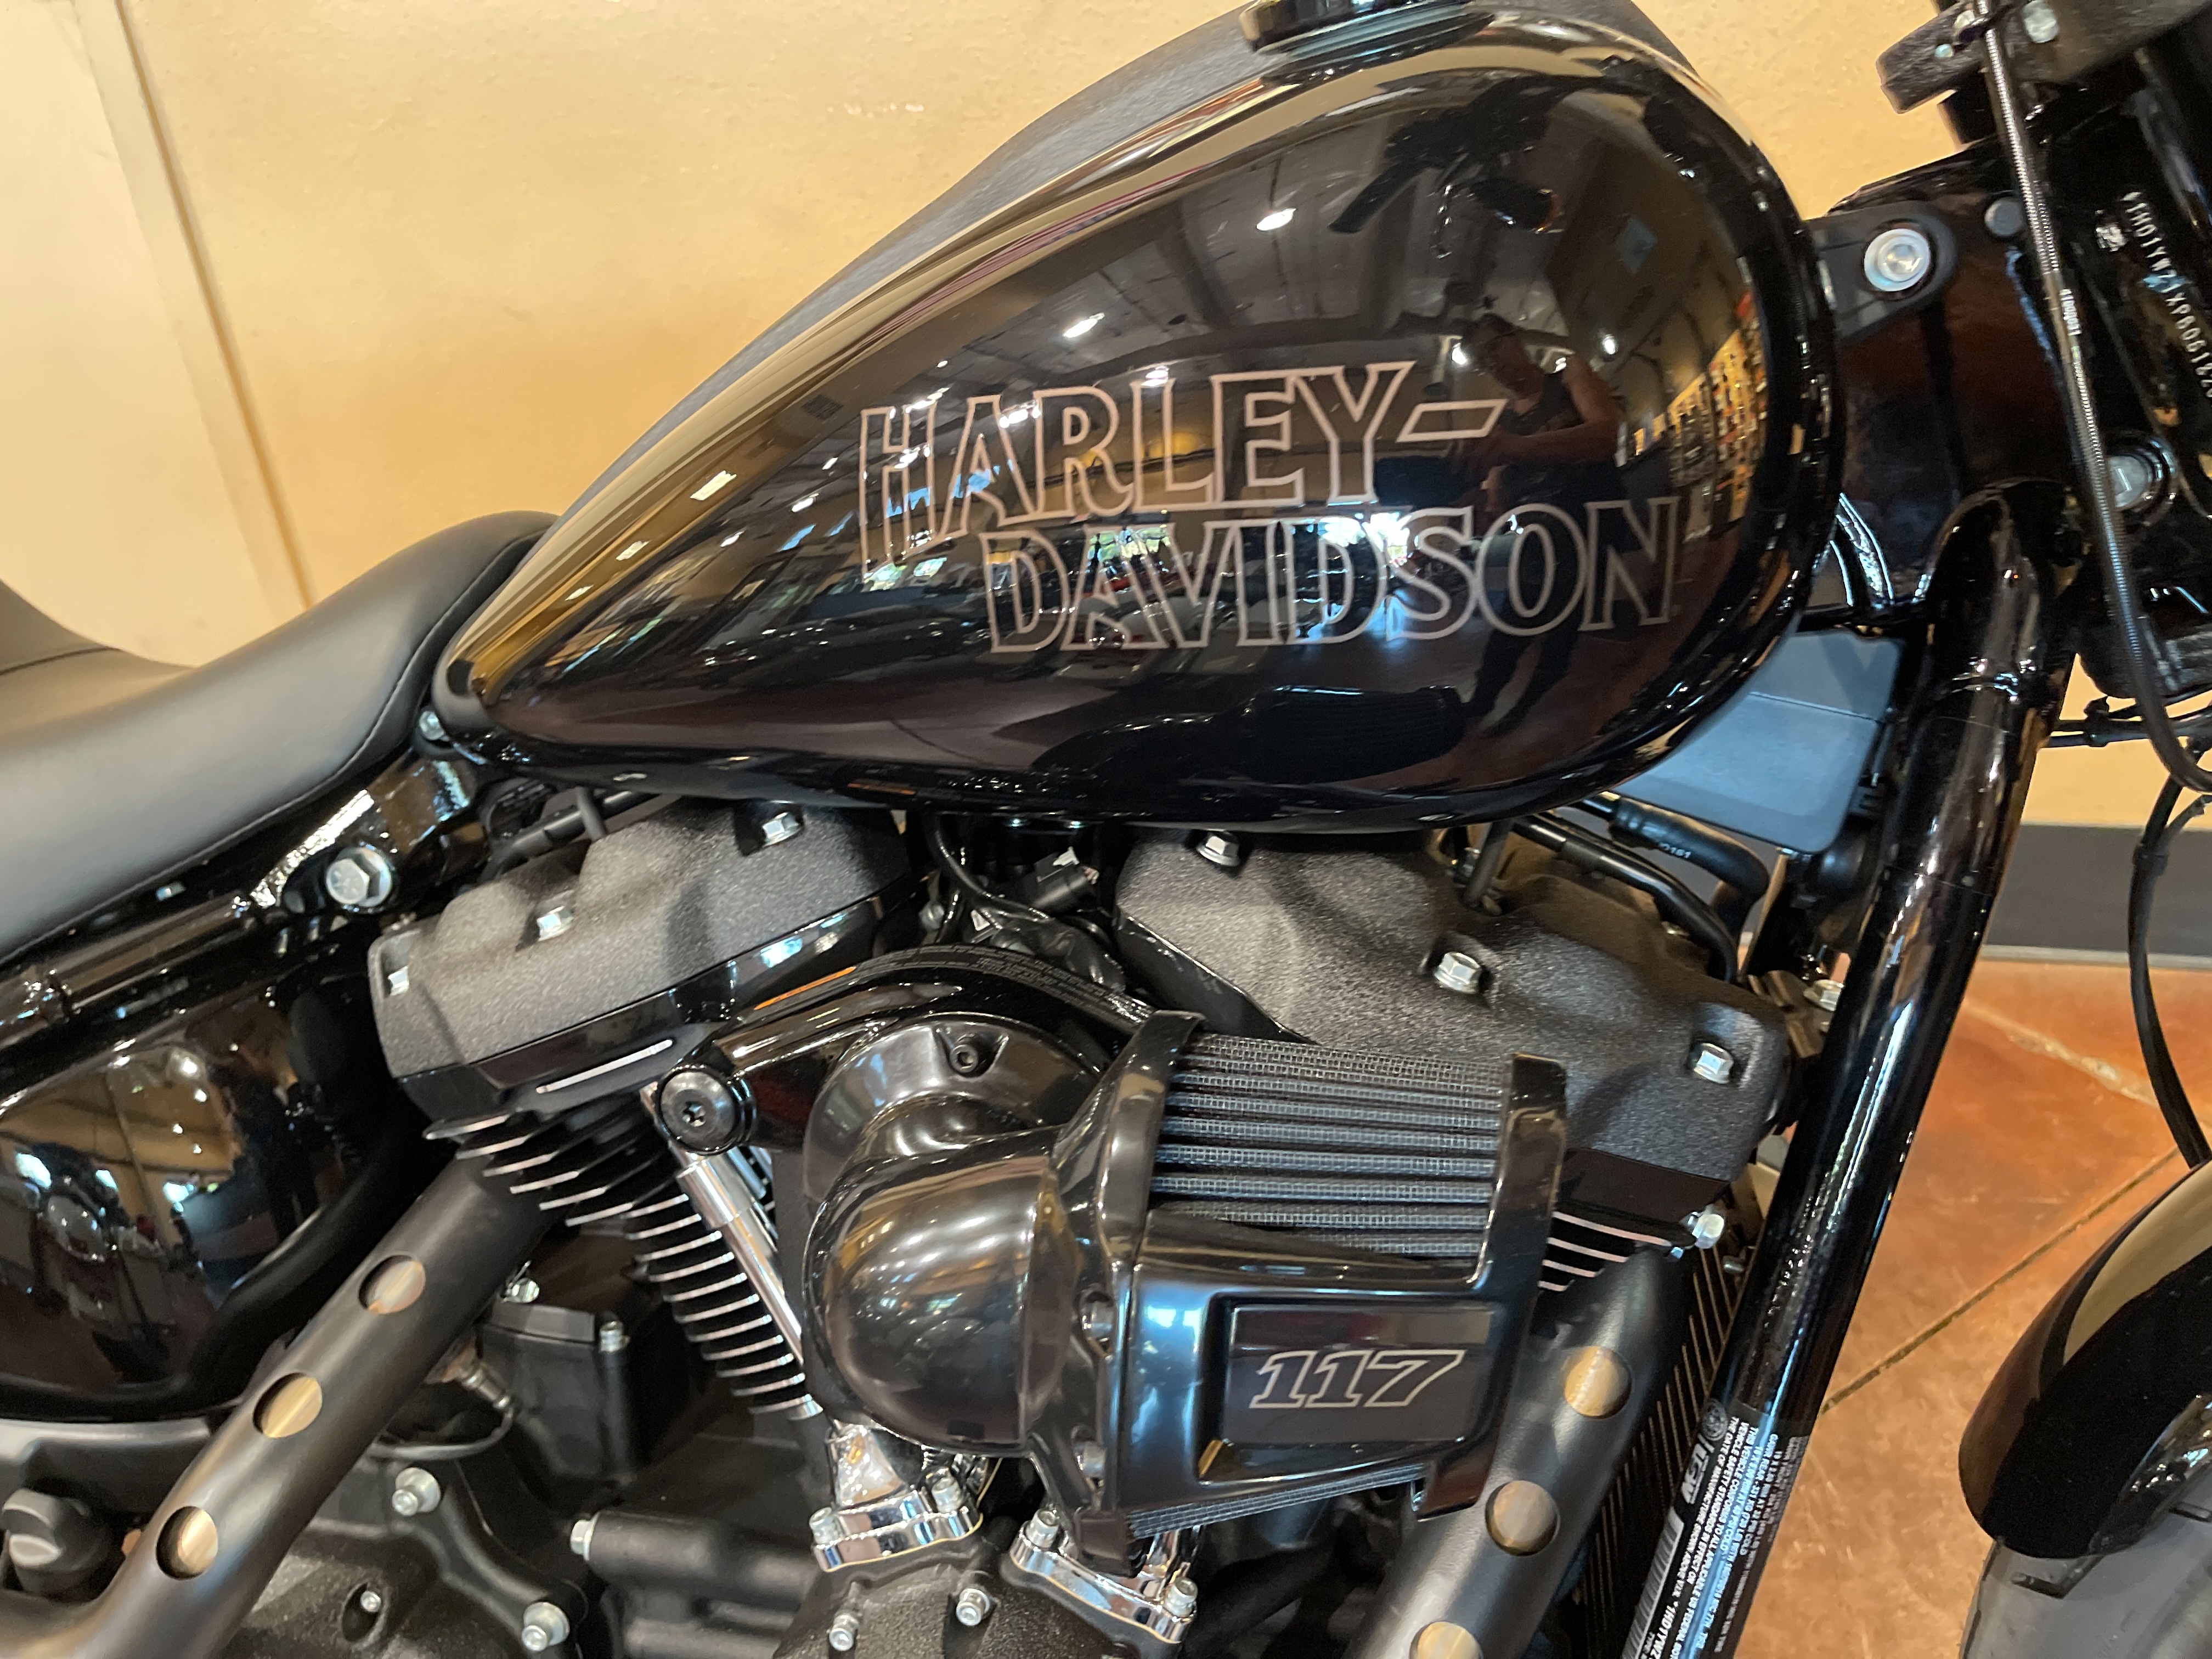 2023 Harley-Davidson Softail Low Rider S at Hells Canyon Harley-Davidson